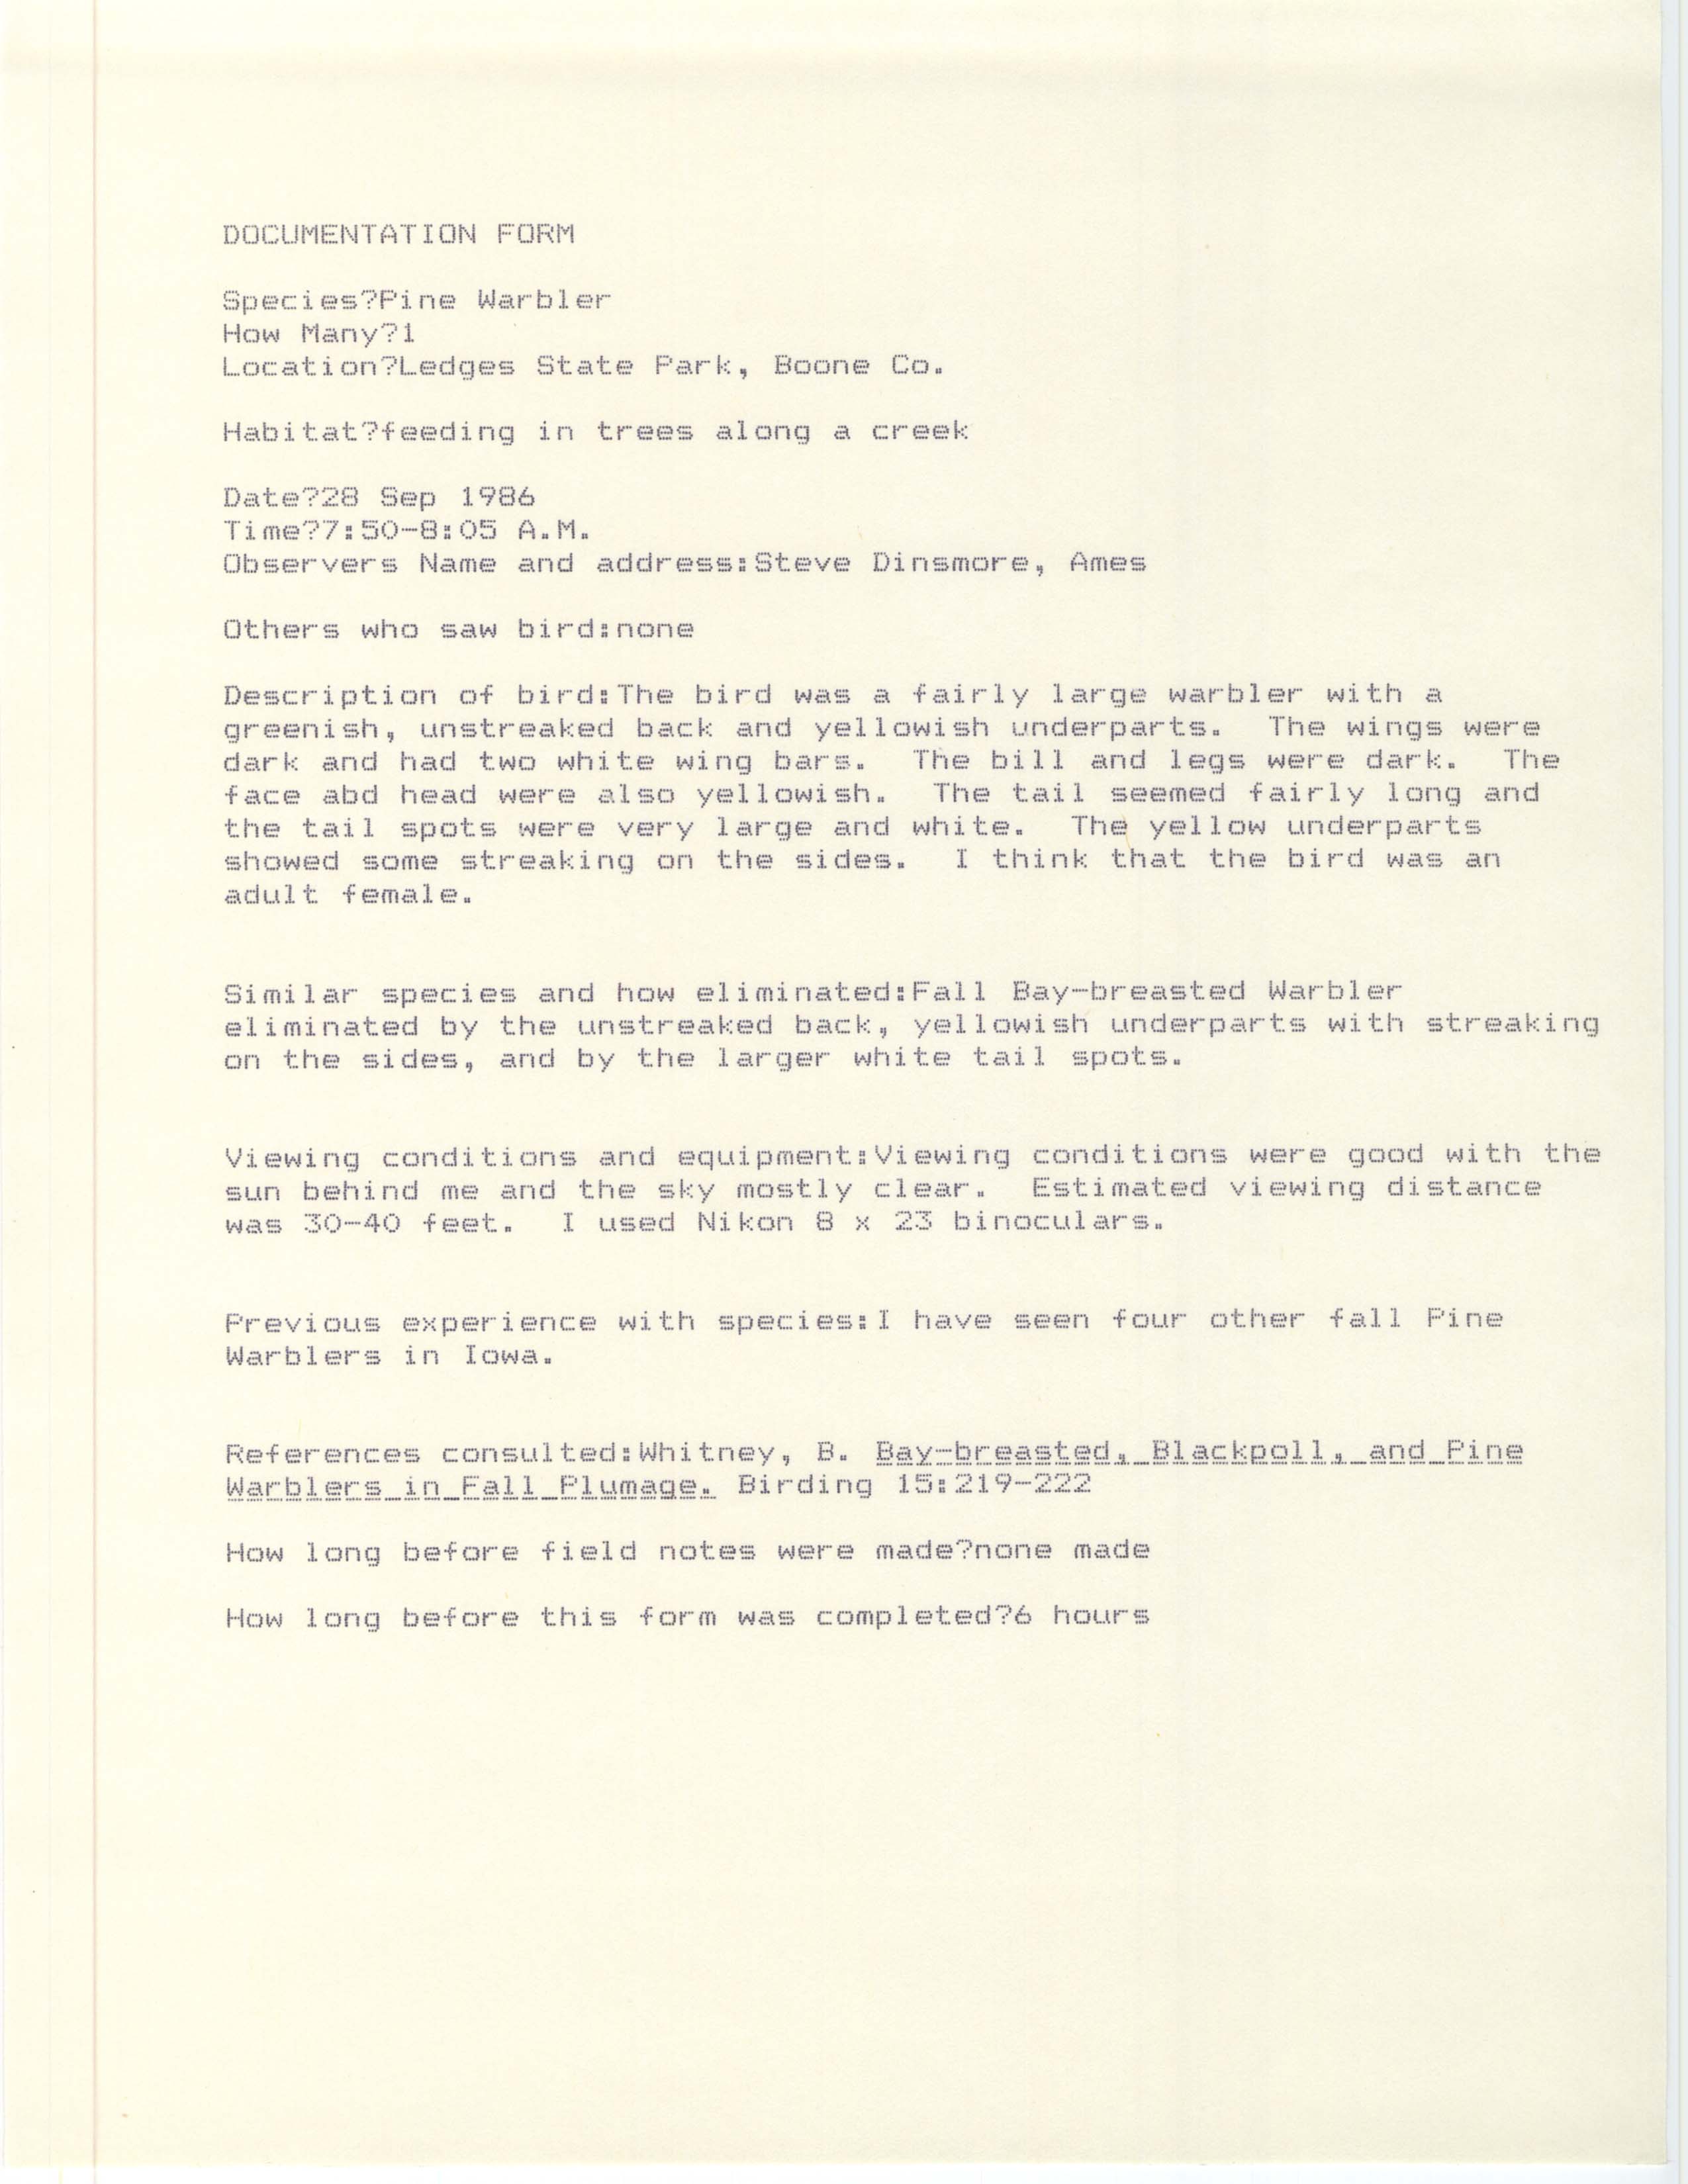 Rare bird documentation form for Pine Warbler at Ledges State Park, 1986